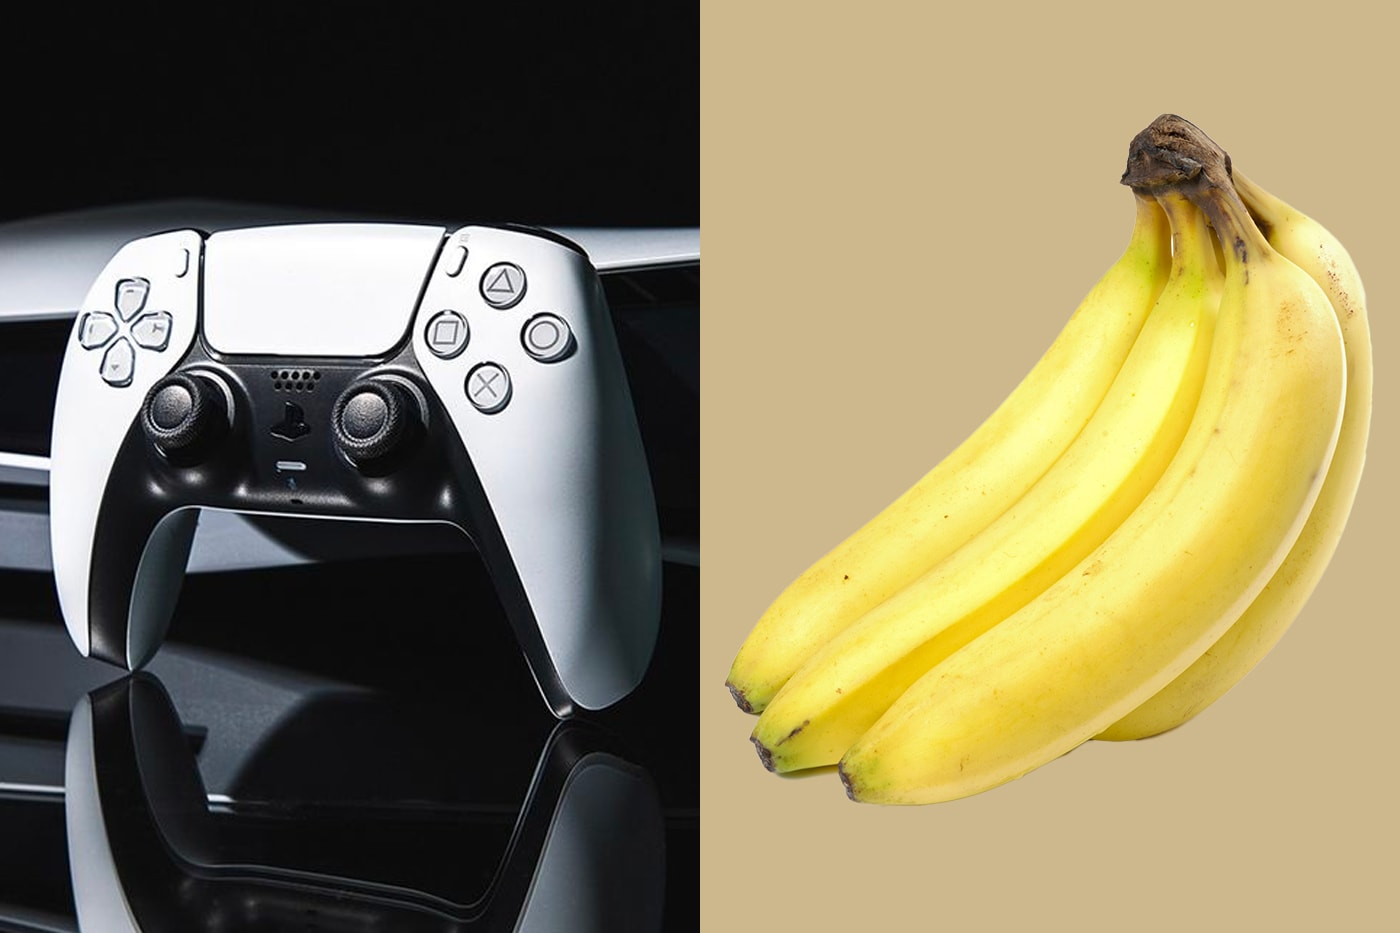 ソニーがバナナをプレイステーションのコントローラーに変える特許を出願 Sony Is Looking to Turn Banana passive non-luminous object gaming controller patent news tech Japan AI VR Gaming PS5 Playstation Patents 